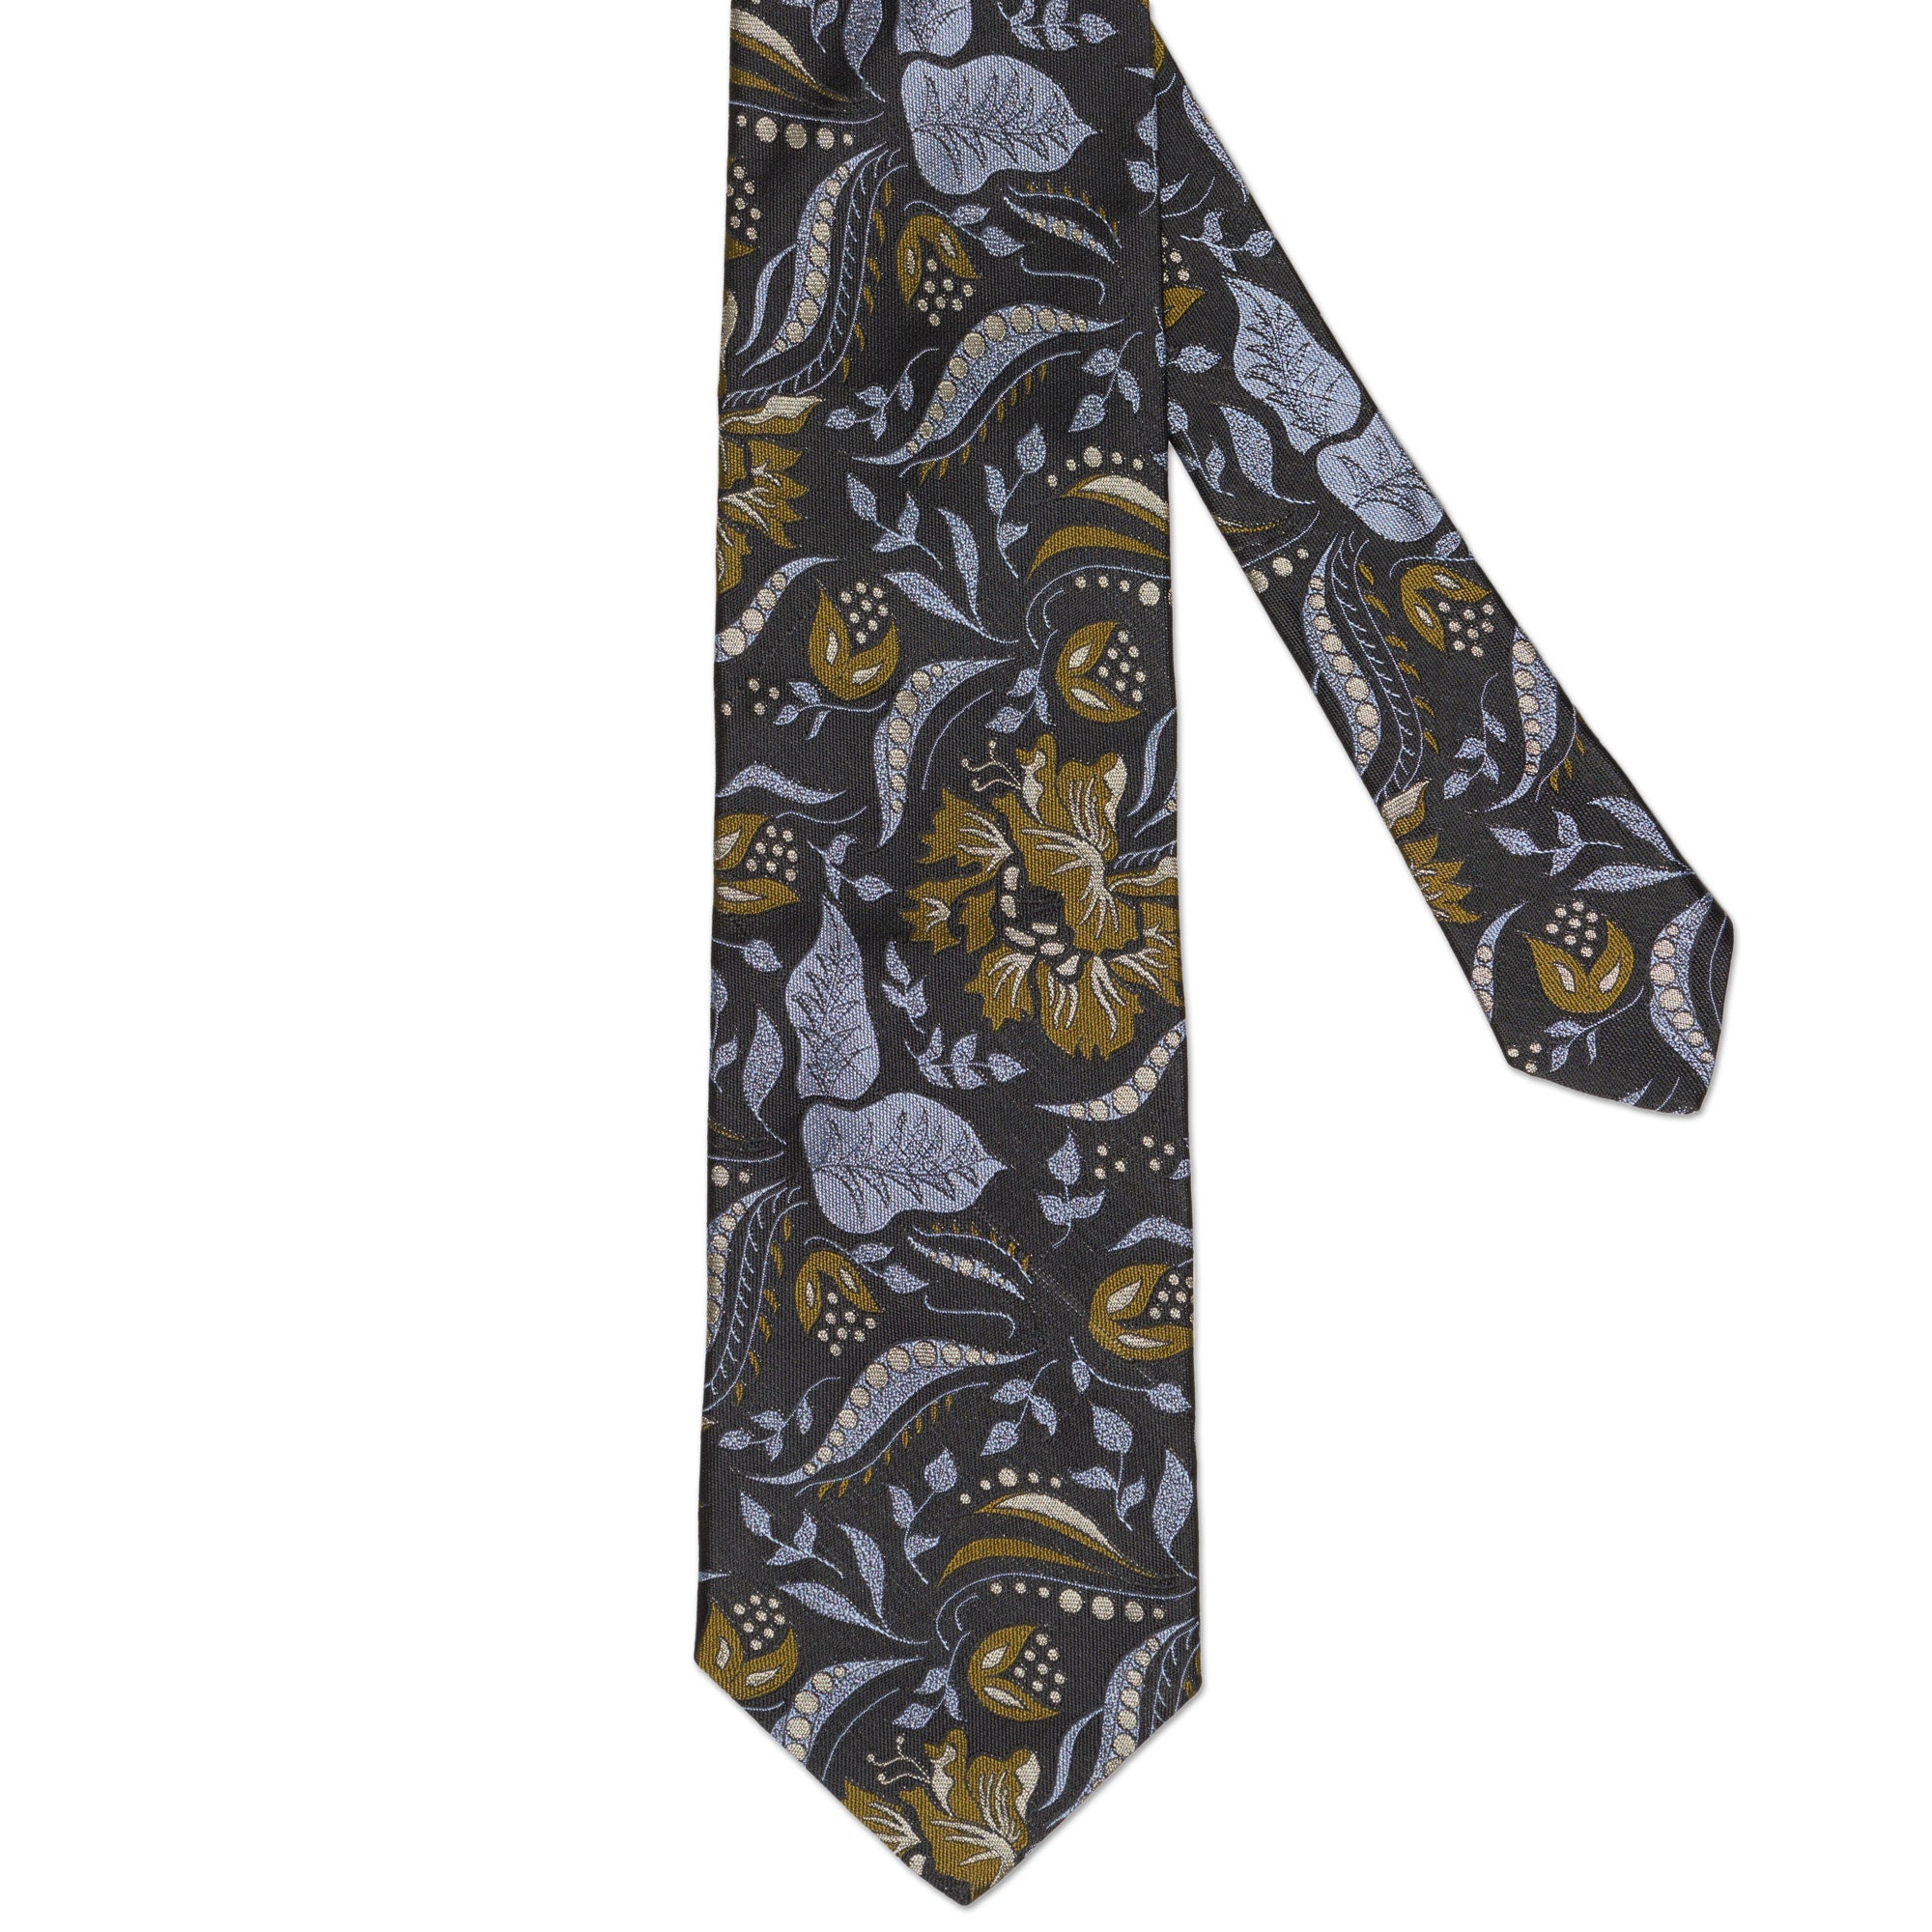 OXXFORD CREST Handmade Black Floral Design Silk Tie